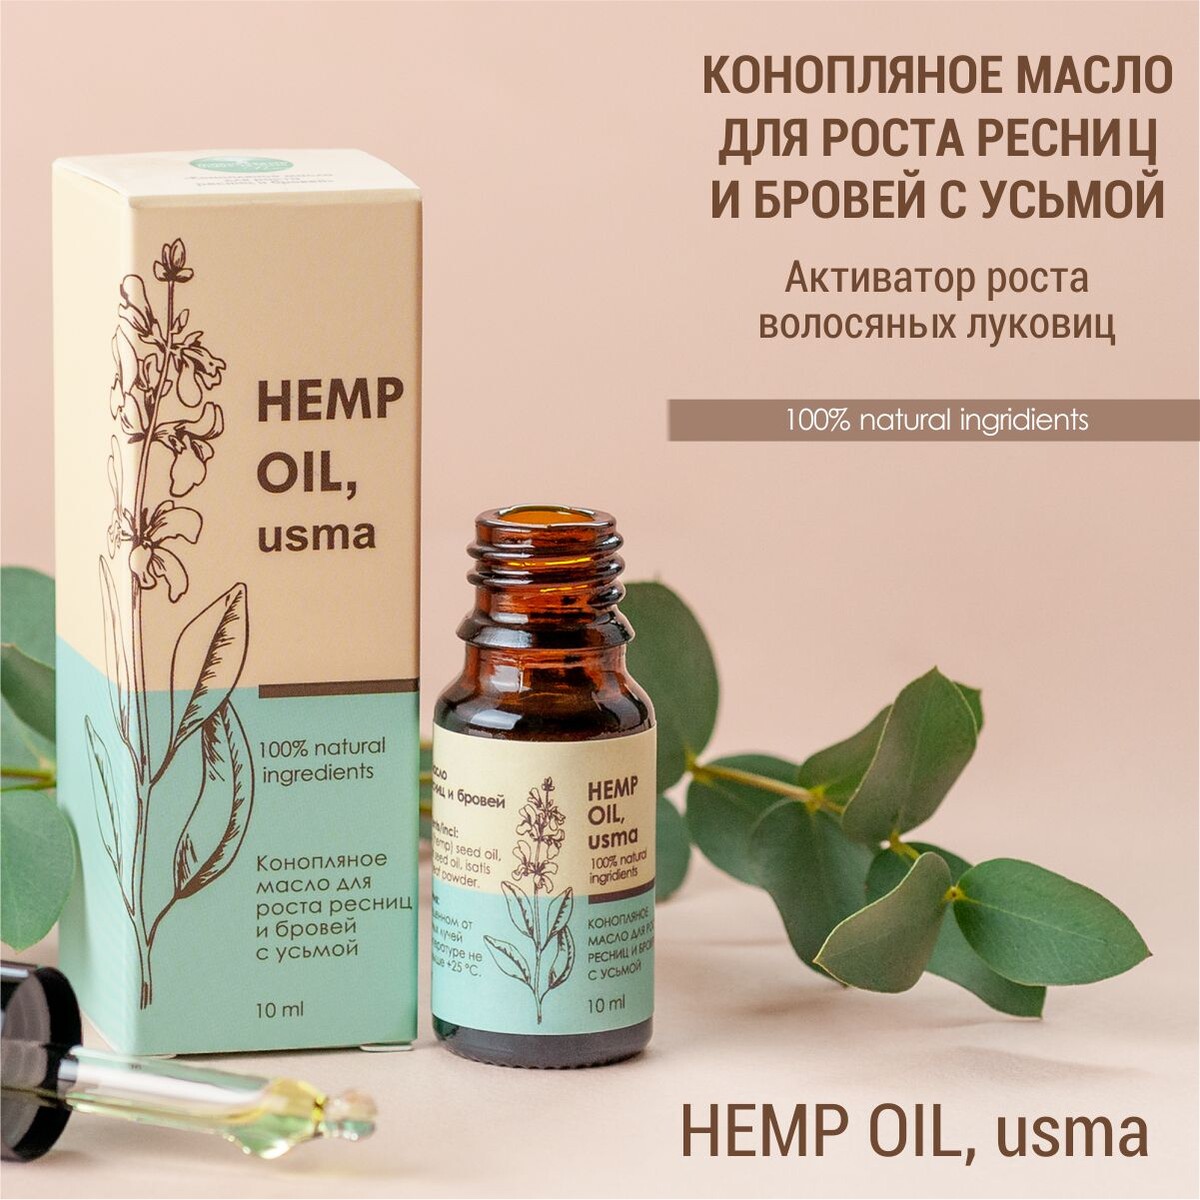 Конопляное масло для роста ресниц и бровей с усьмой (hemp oil, usma) сыворотка активатор для роста ресниц 4мл